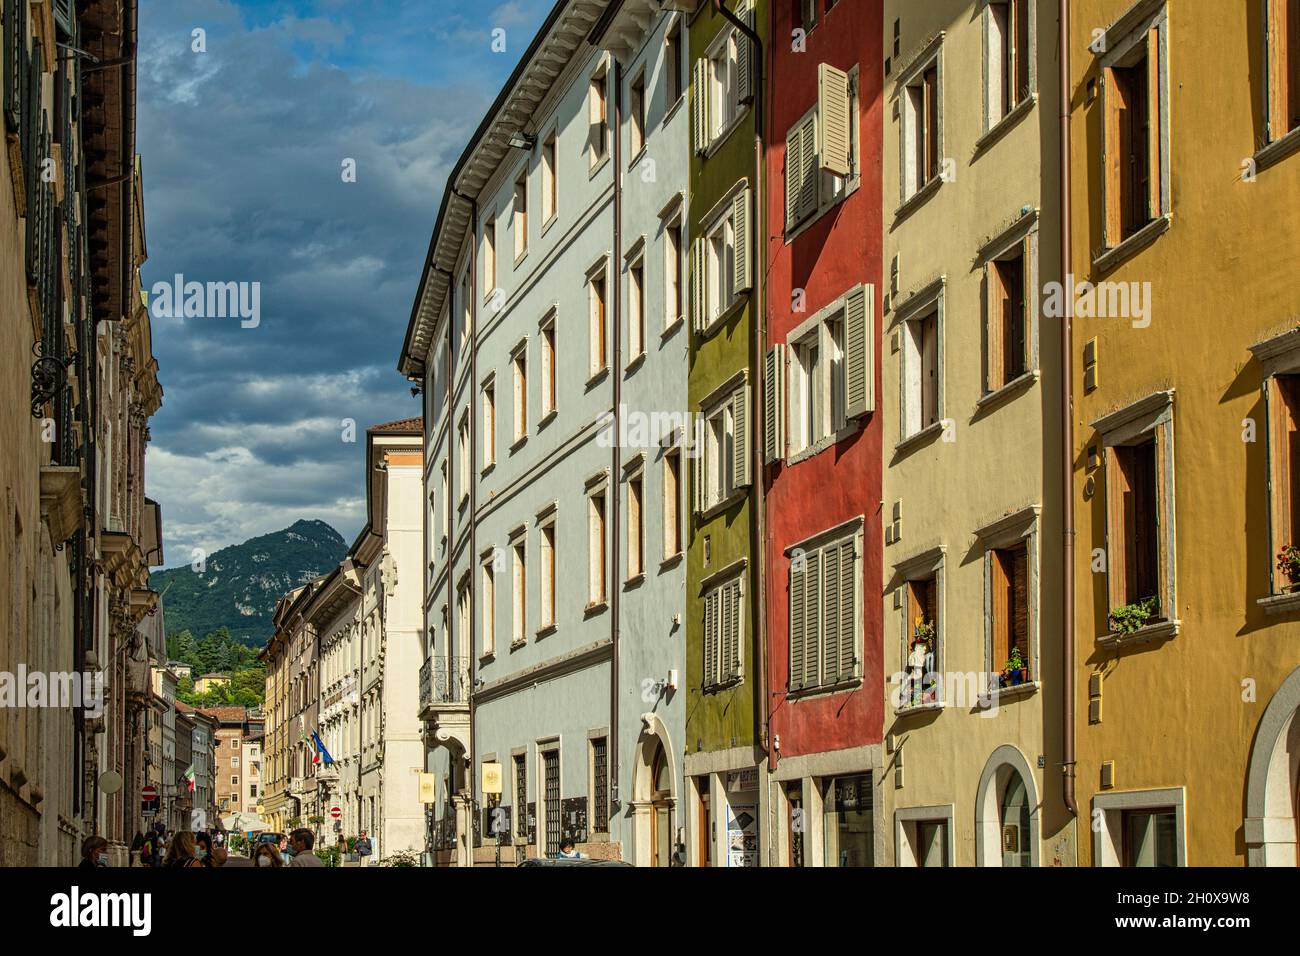 Facciate di antichi edifici nel centro storico della città di Trento. Trento, provincia autonoma di Trento, Trentino-Alto Adige, Italia, Europa Foto Stock